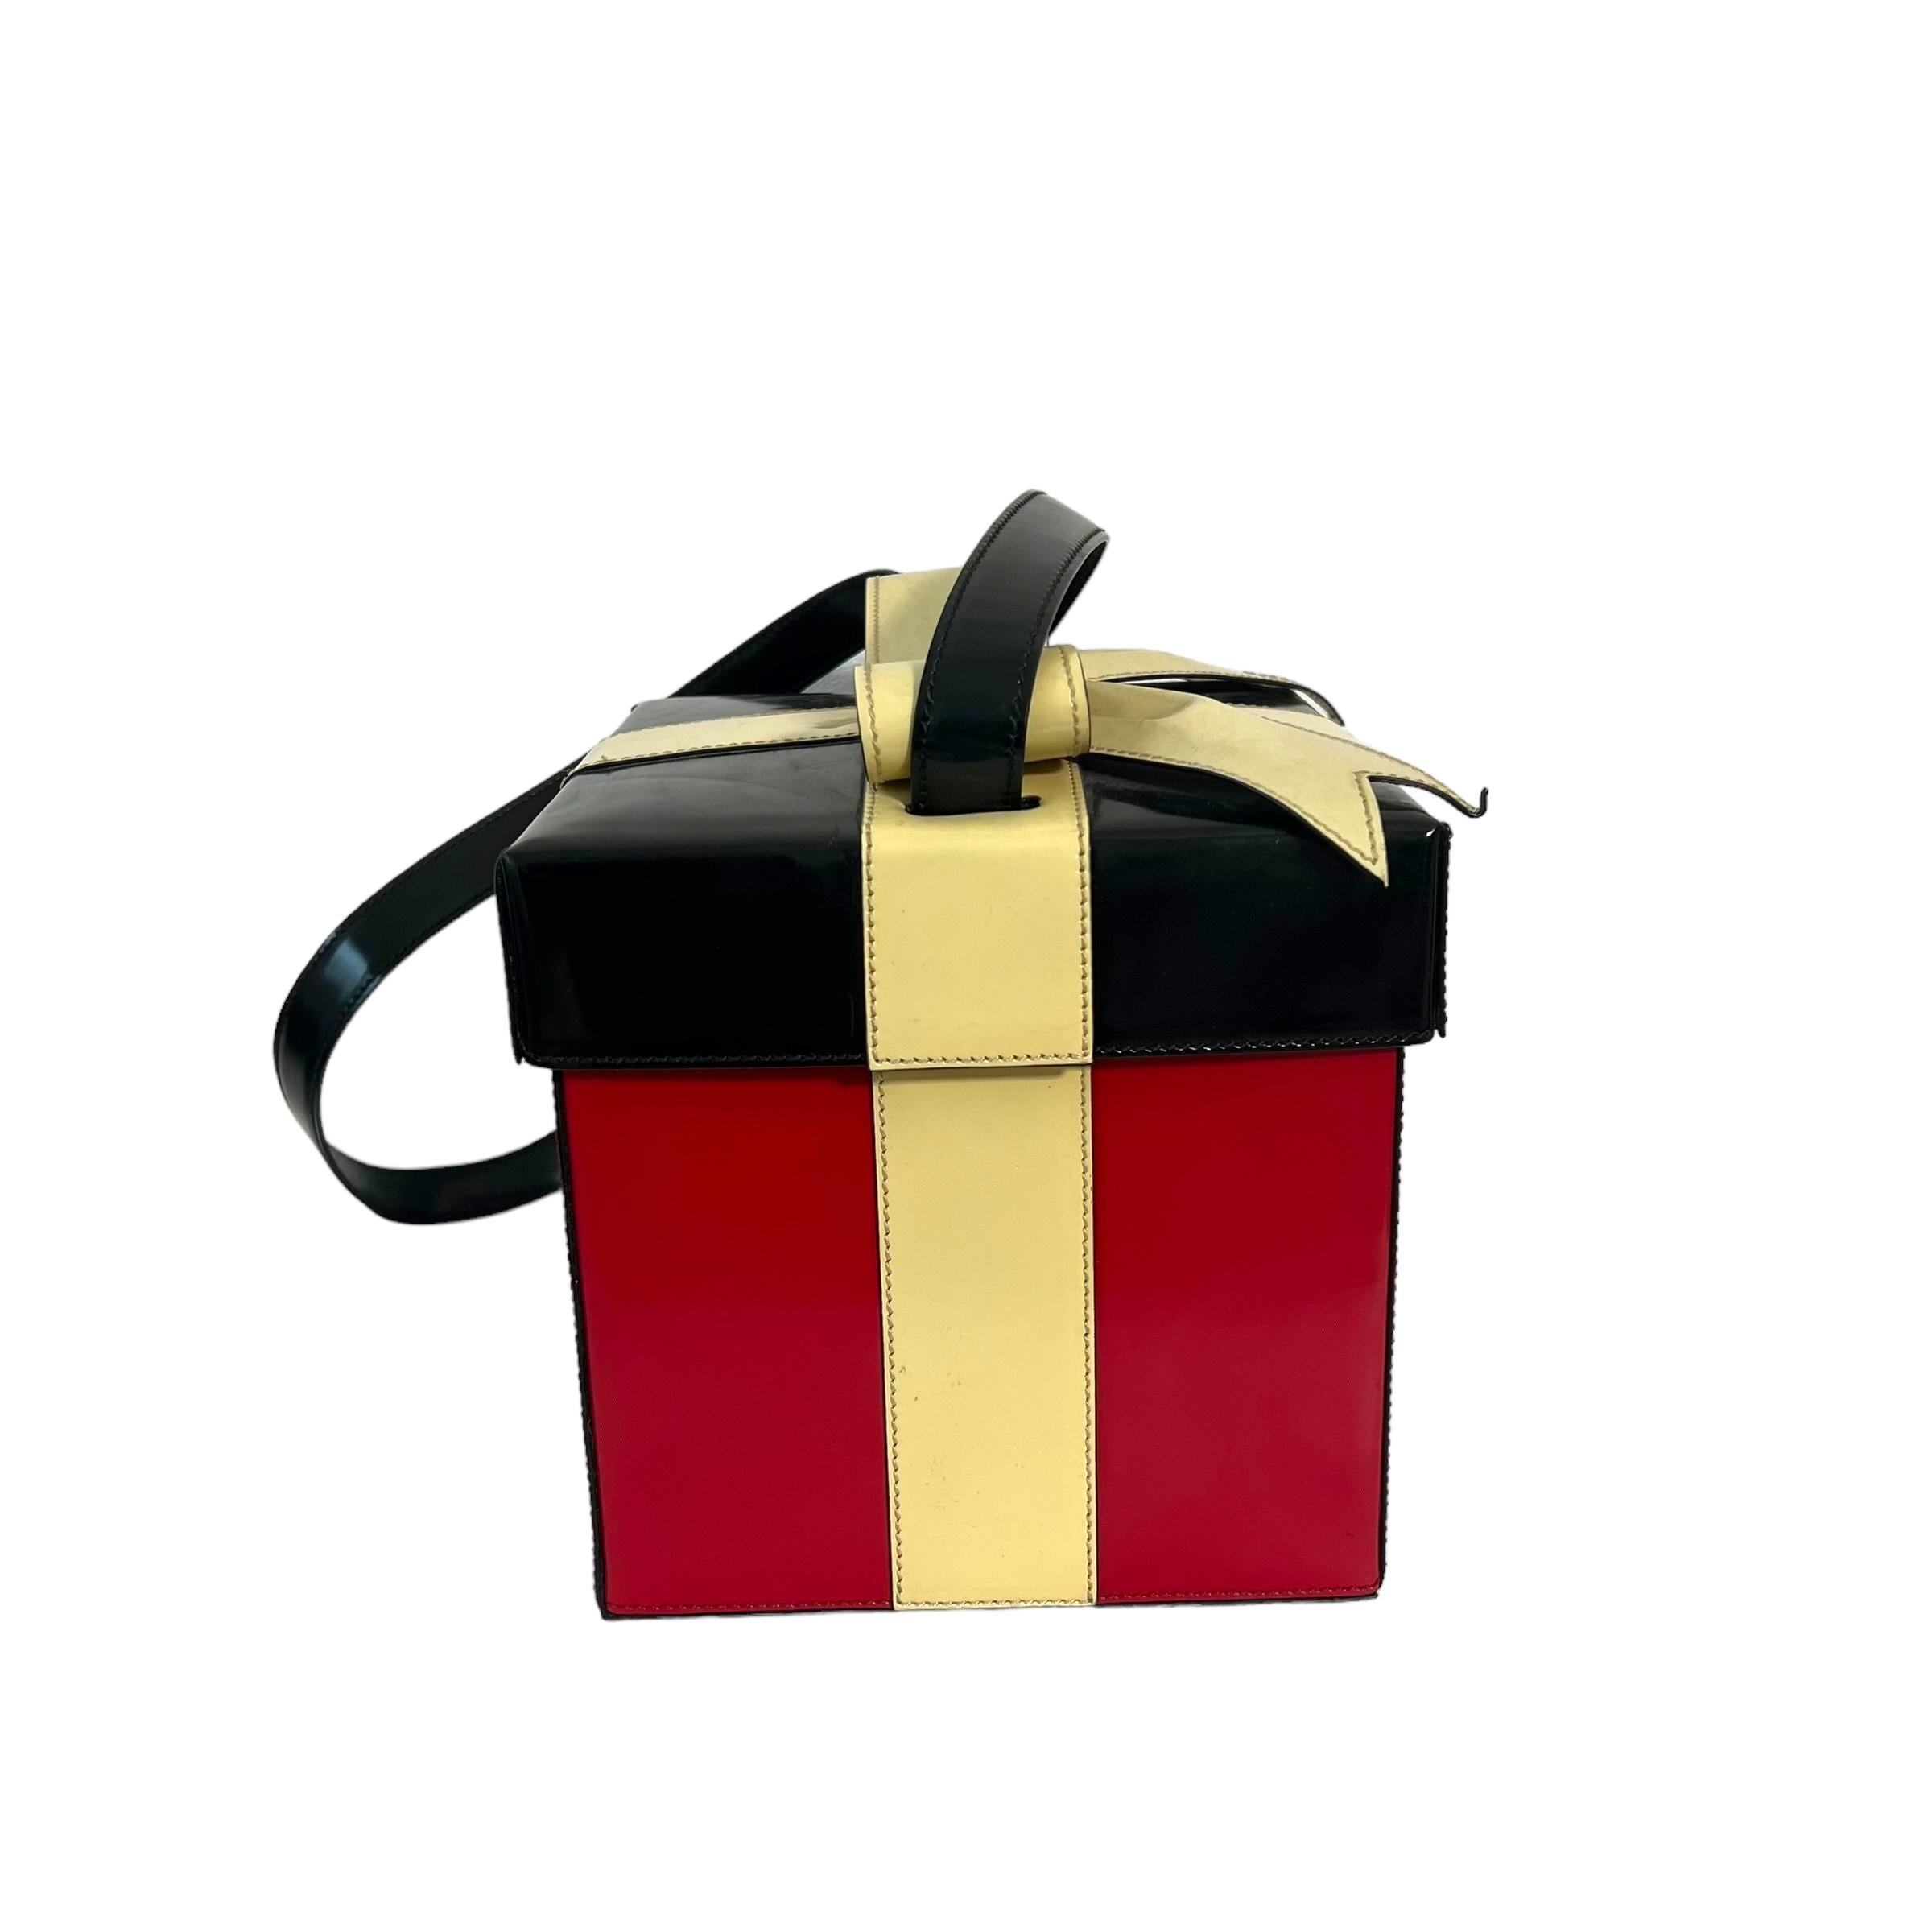 
Diese Moschino Handtasche ist ein seltenes Vintage-Stück, perfekt für die Feiertage! Die in Italien gefertigten schwarzen und roten Farben mit einer wunderschönen Schleifenverzierung geben ihm wirklich das Aussehen eines Geschenks. Als Sammlerstück